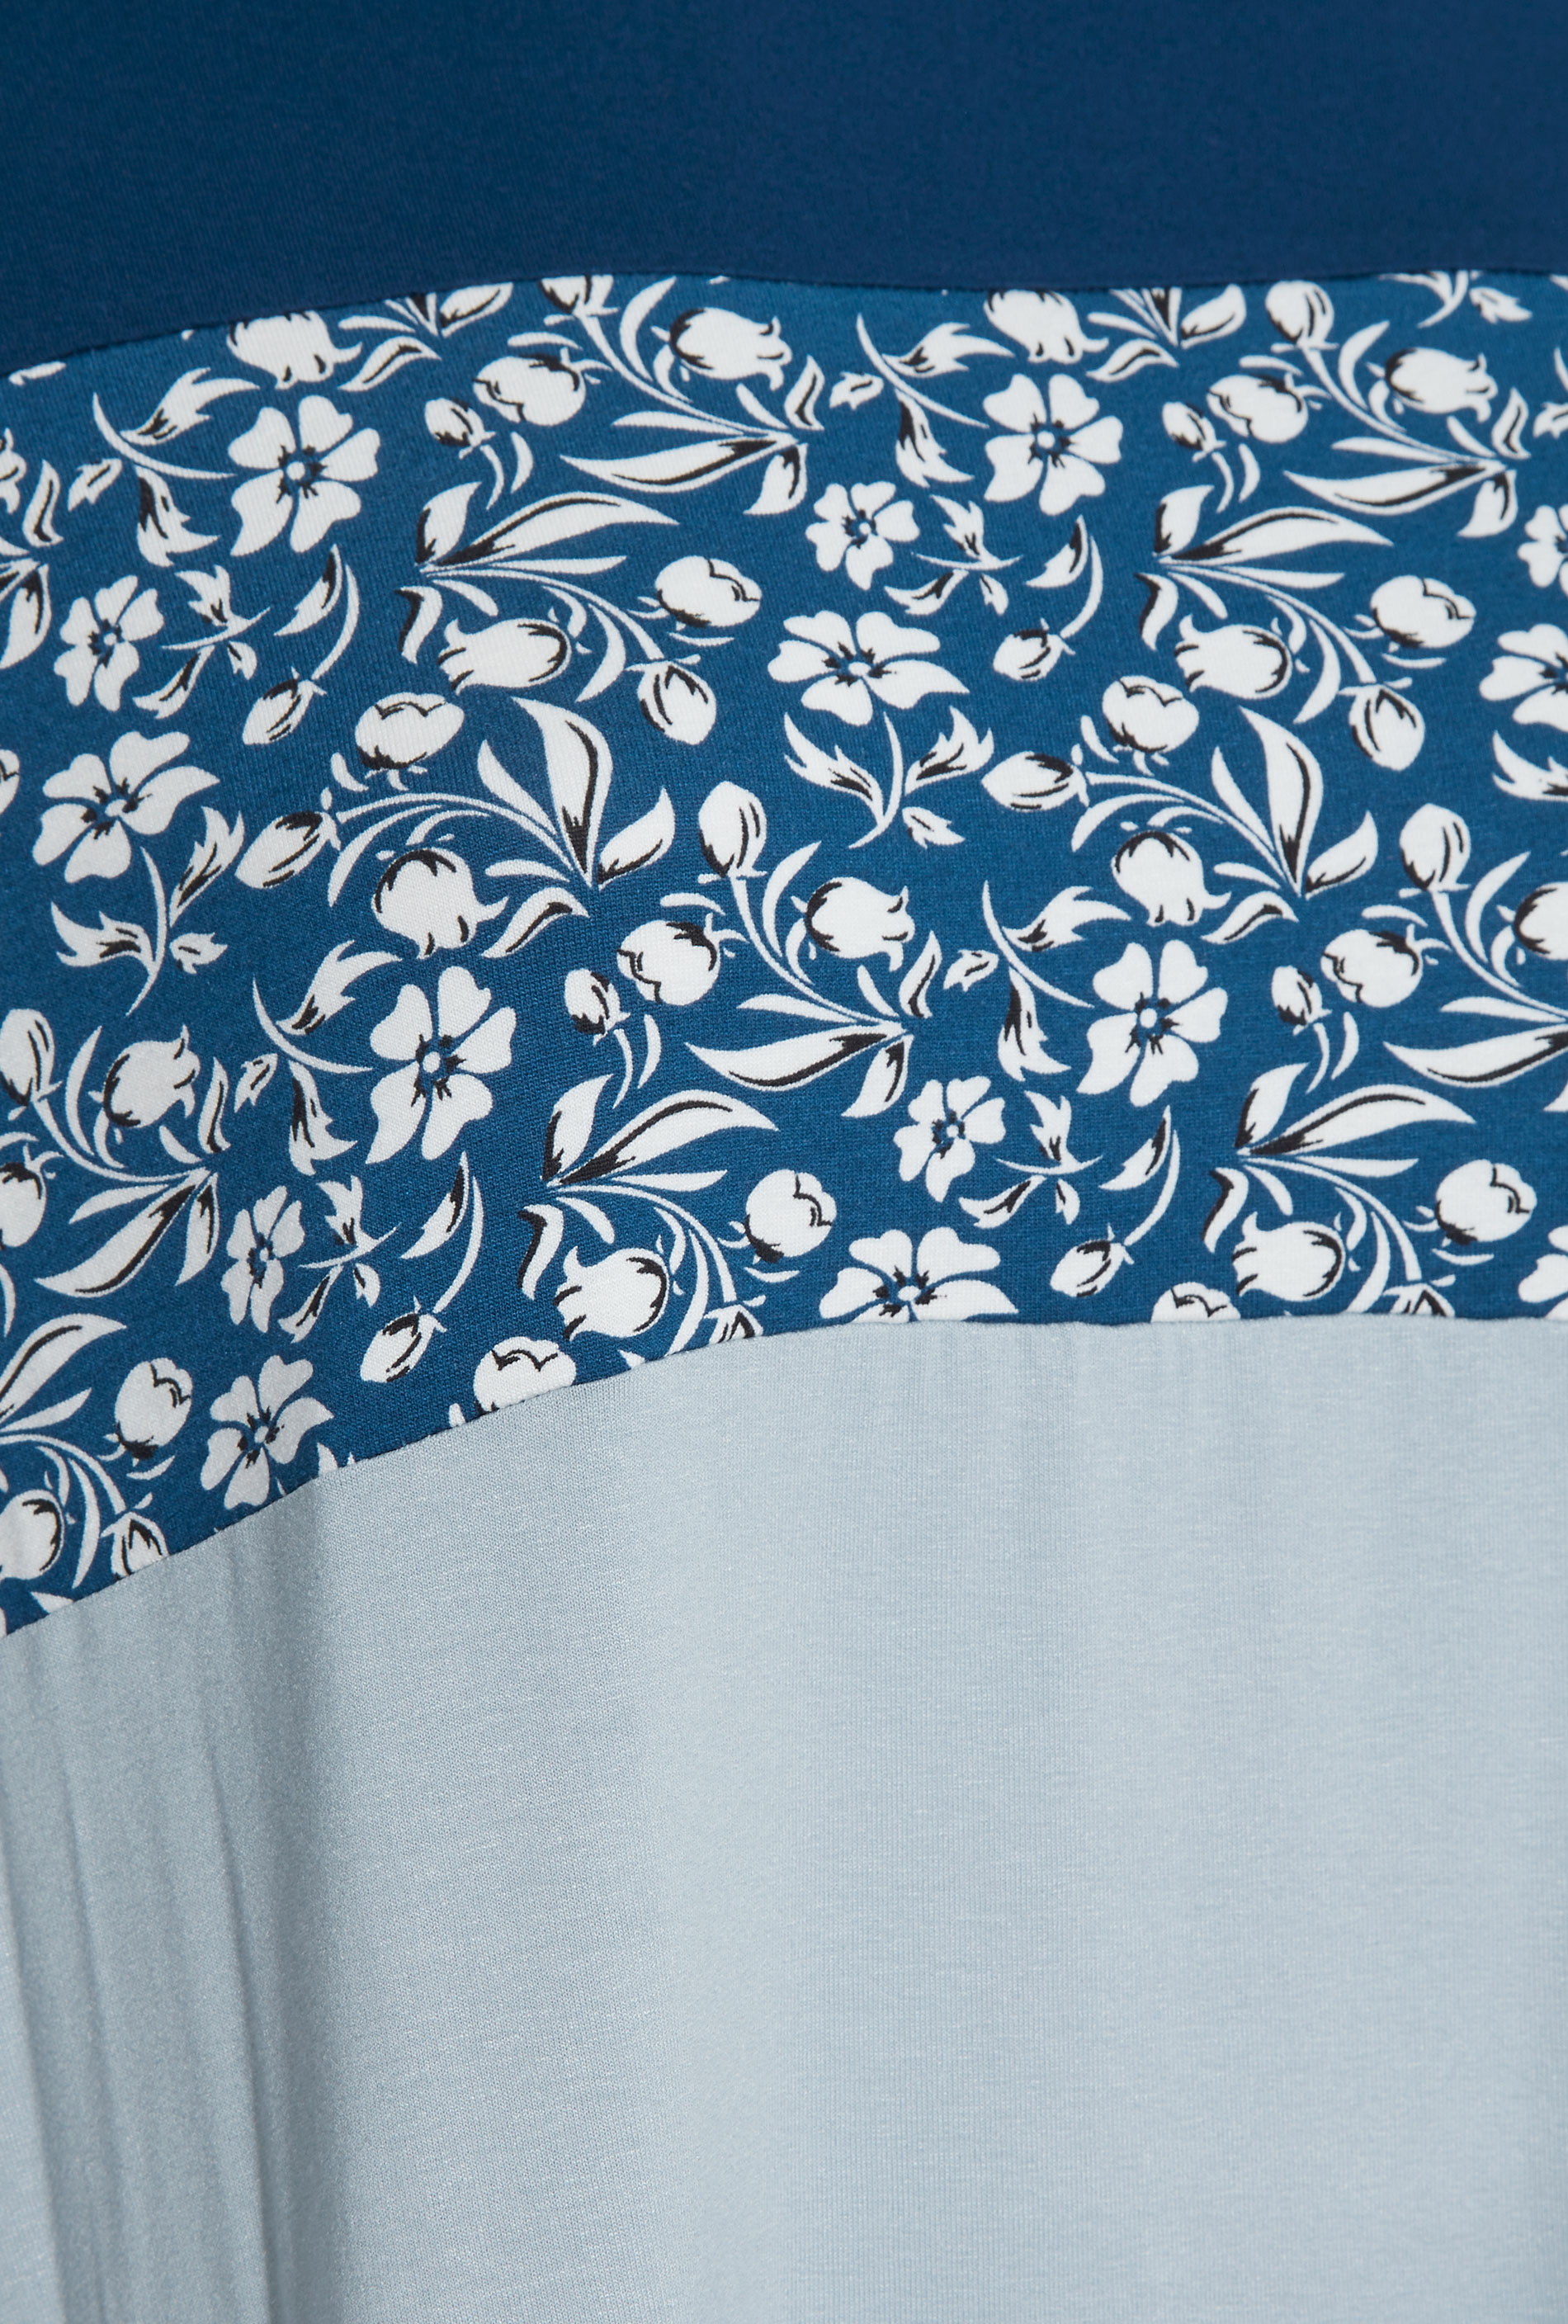 Grande taille  Tops Grande taille  Tops Casual | T-Shirt Bleu Imprimé Floral Block de Couleur - RV82820